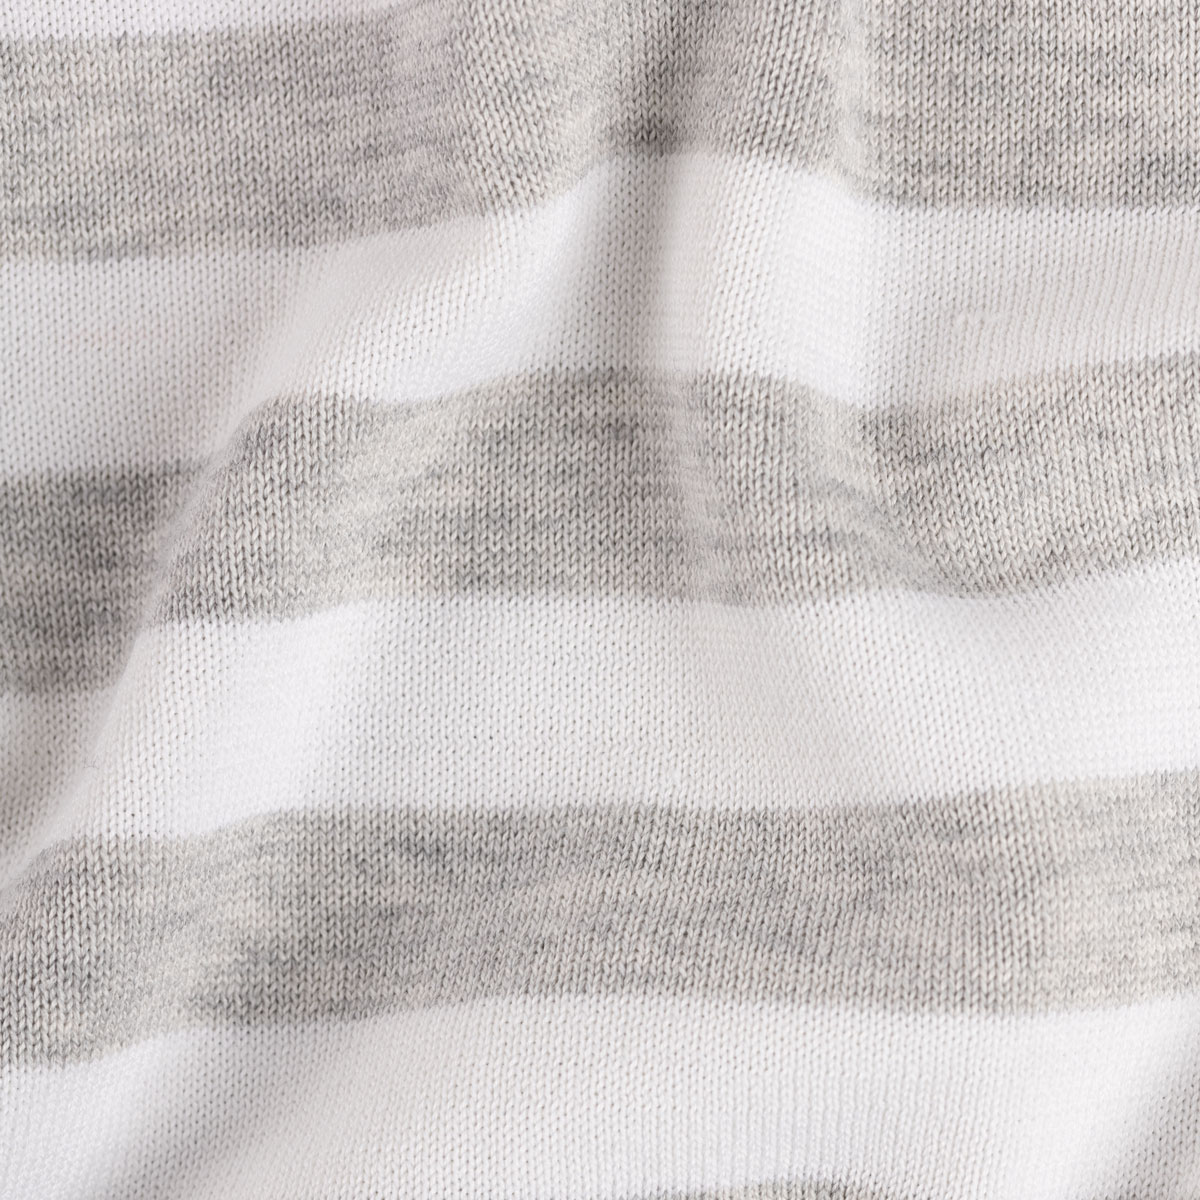 T-Shirt Rundhals mit Streifen in hellgrau-weiß